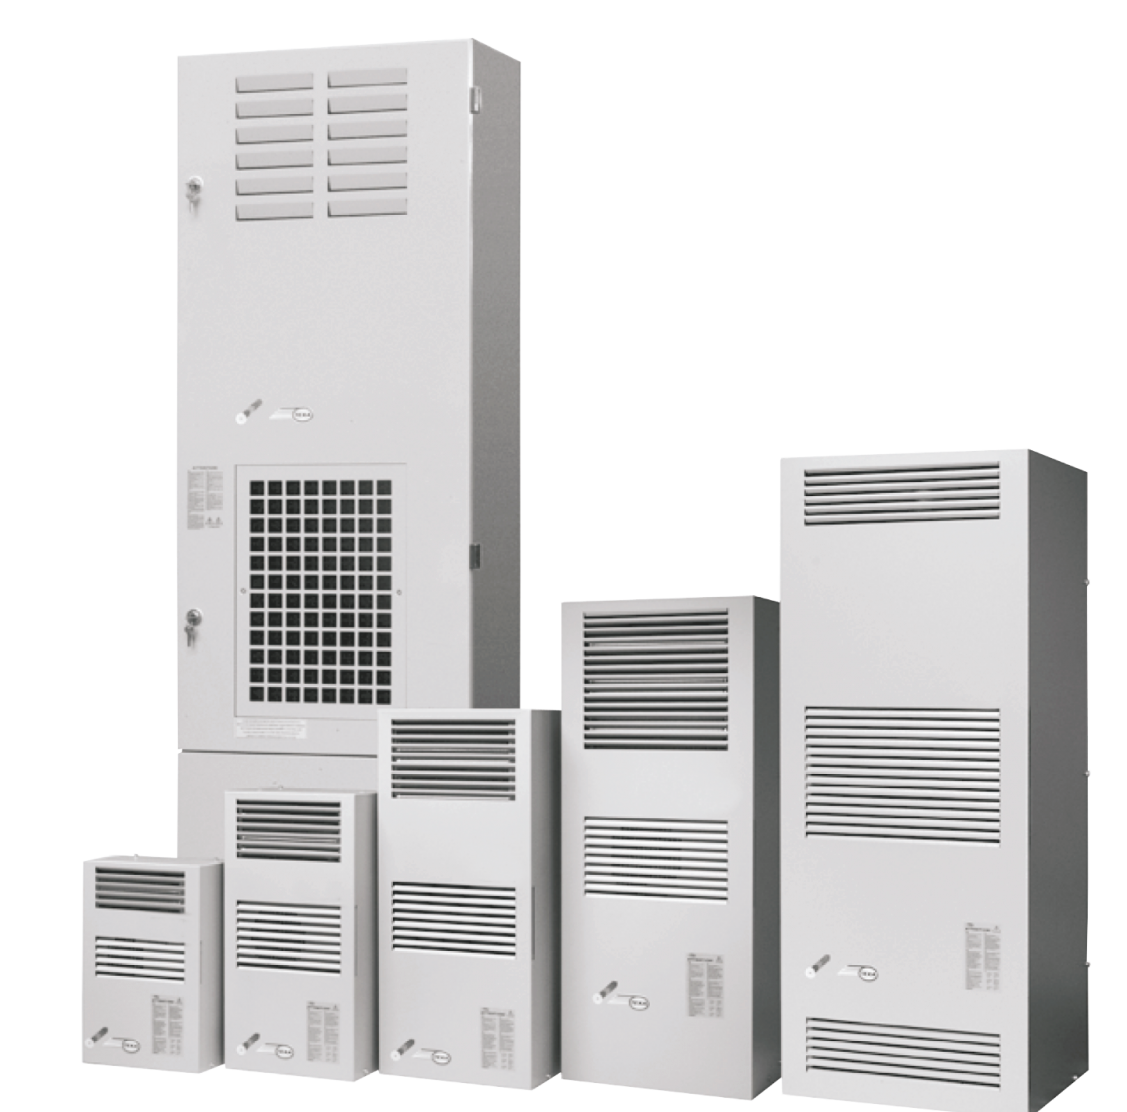 Air conditioner EGO06 (230V, 50-60Hz, 640W)